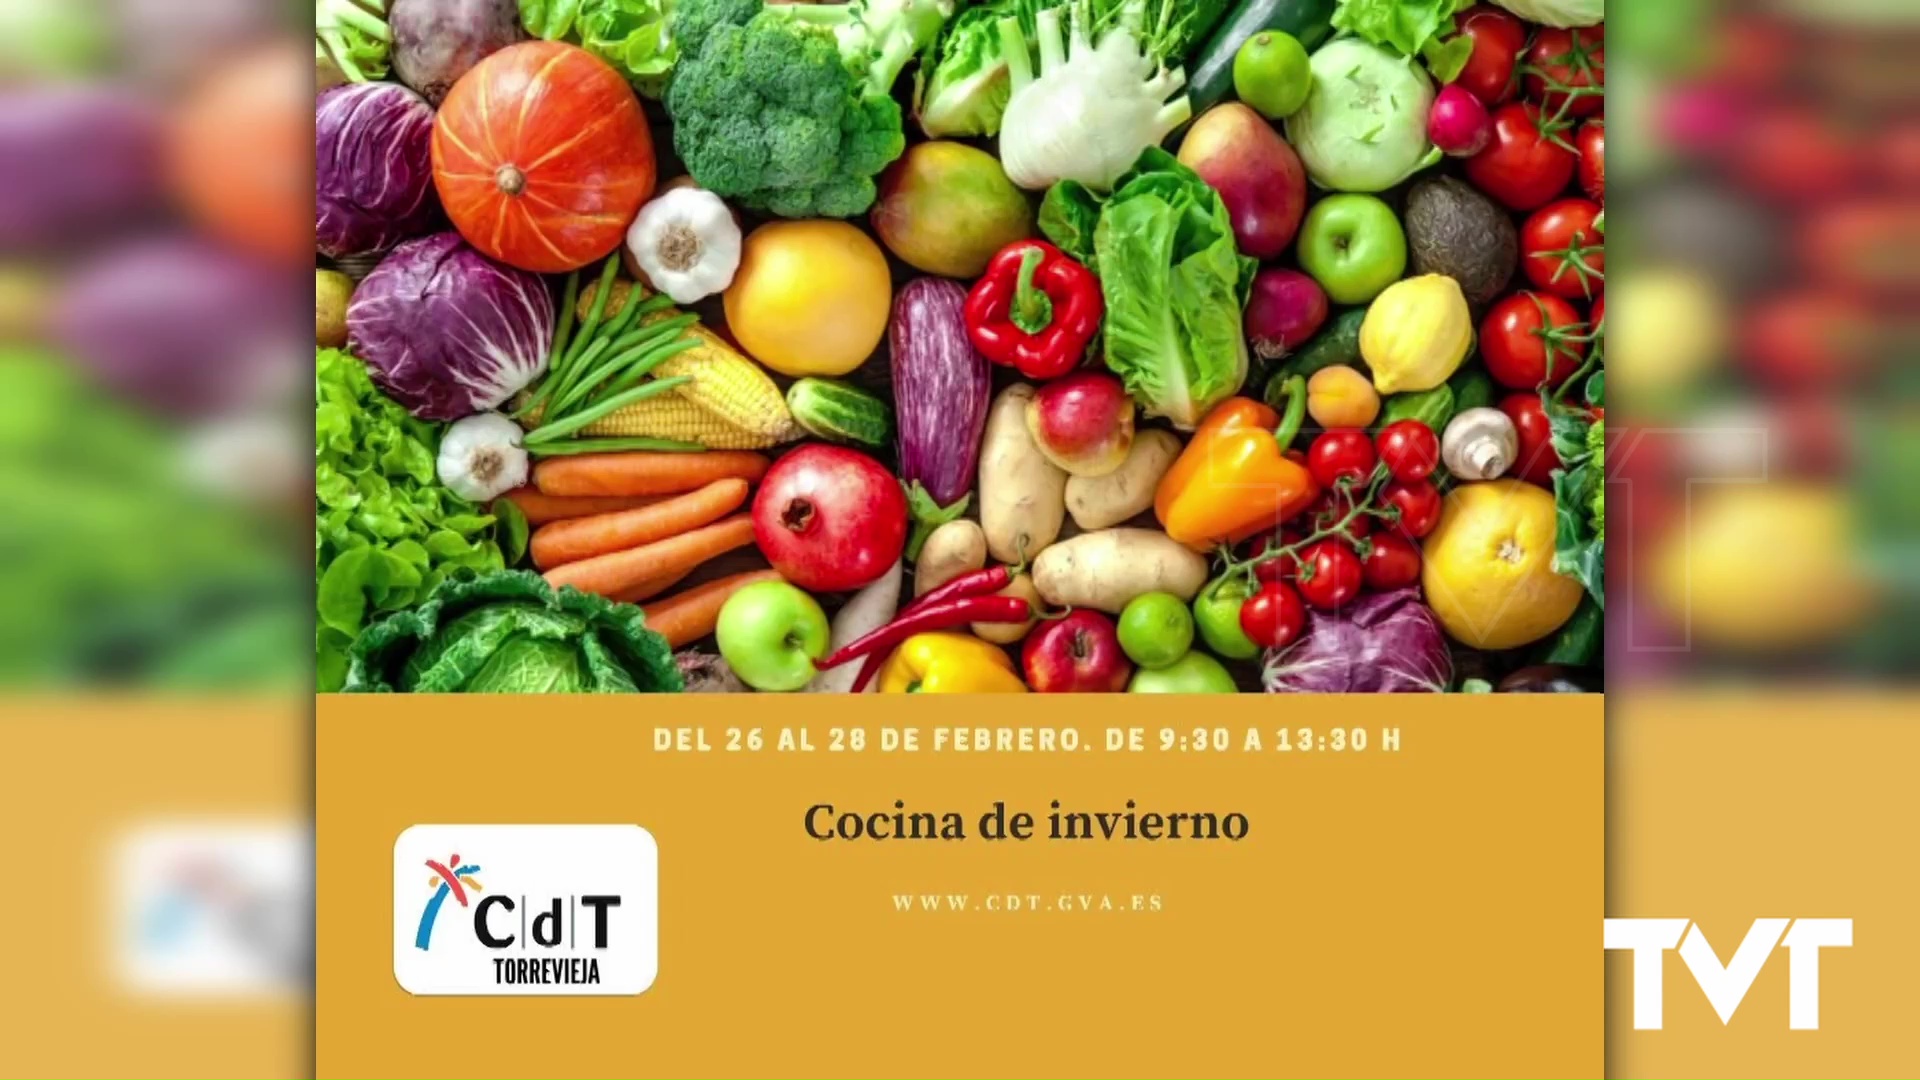 Imagen de El CDT de Torrevieja pone en marcha del 26 al 28 de febrero un curso de cocina de invierno 